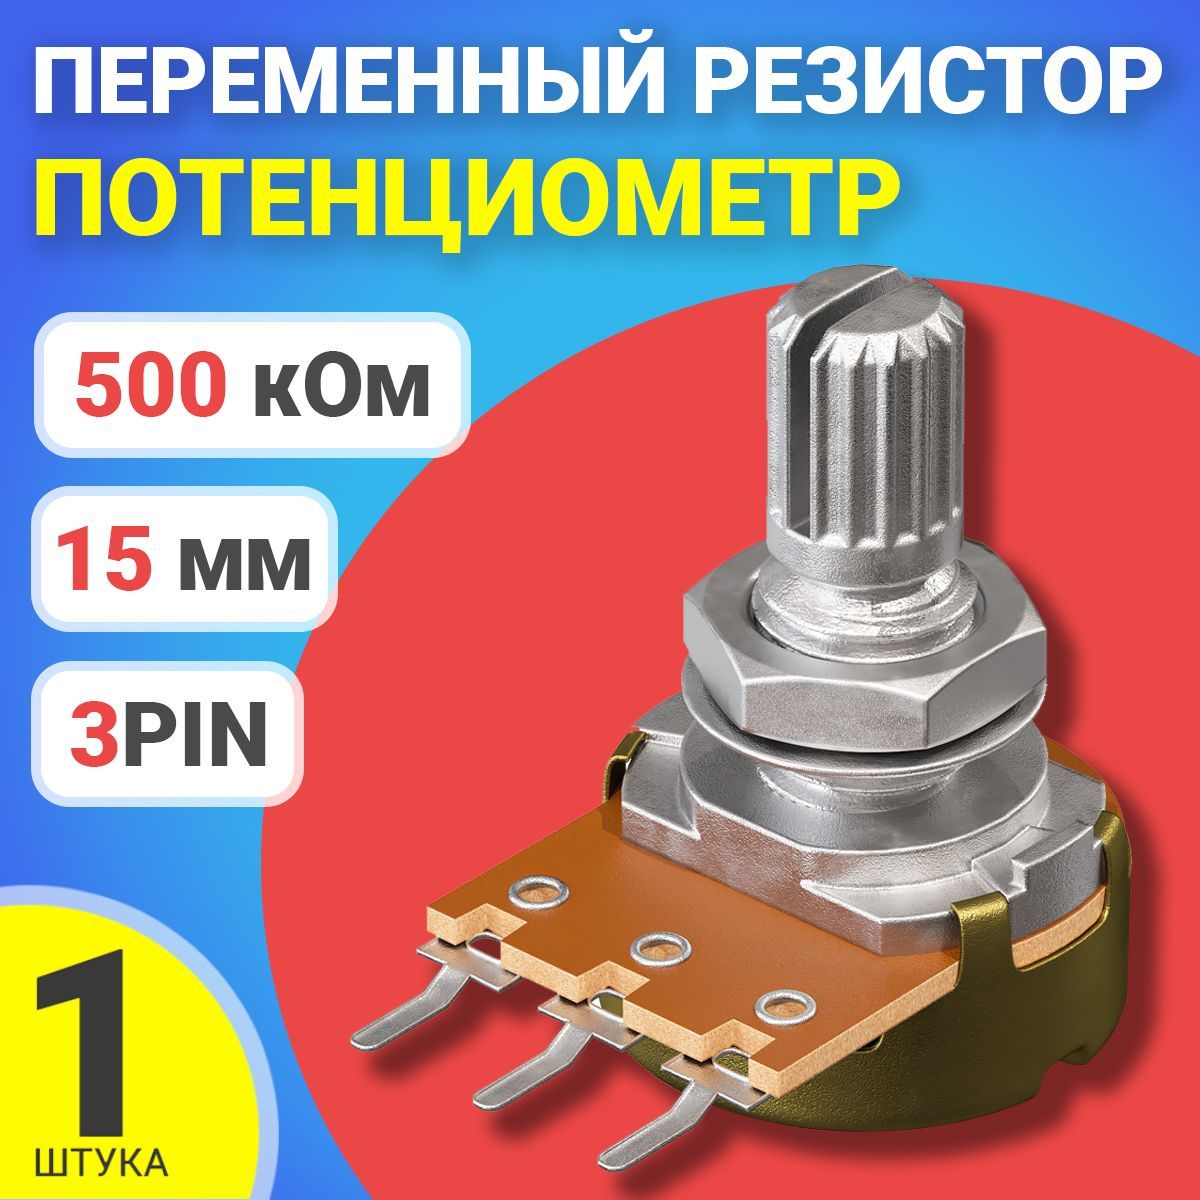 ПотенциометрGSMINWH148B500K(500кОм)переменныйрезистор15мм3-pin